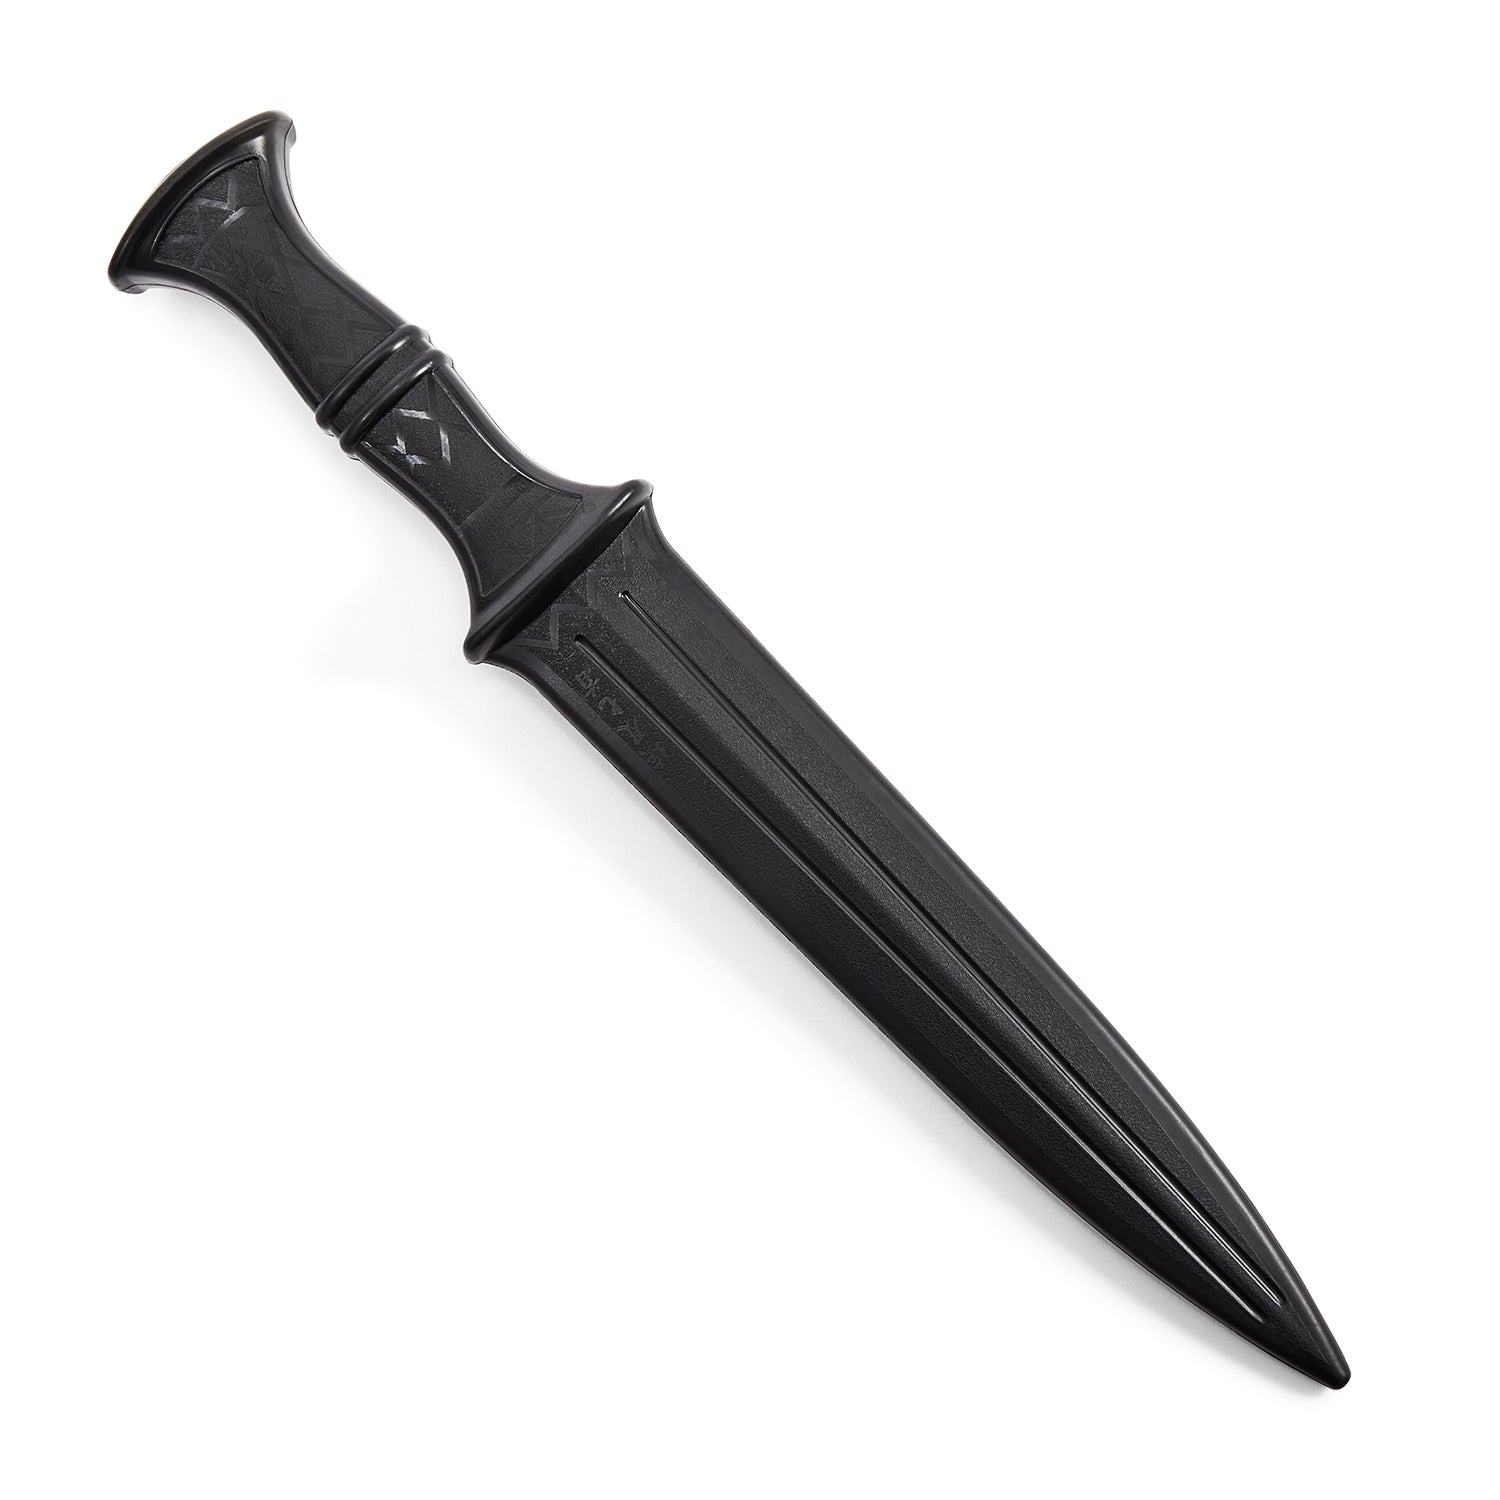 TPR Rubber "Egyptian Dagger" Training Knife